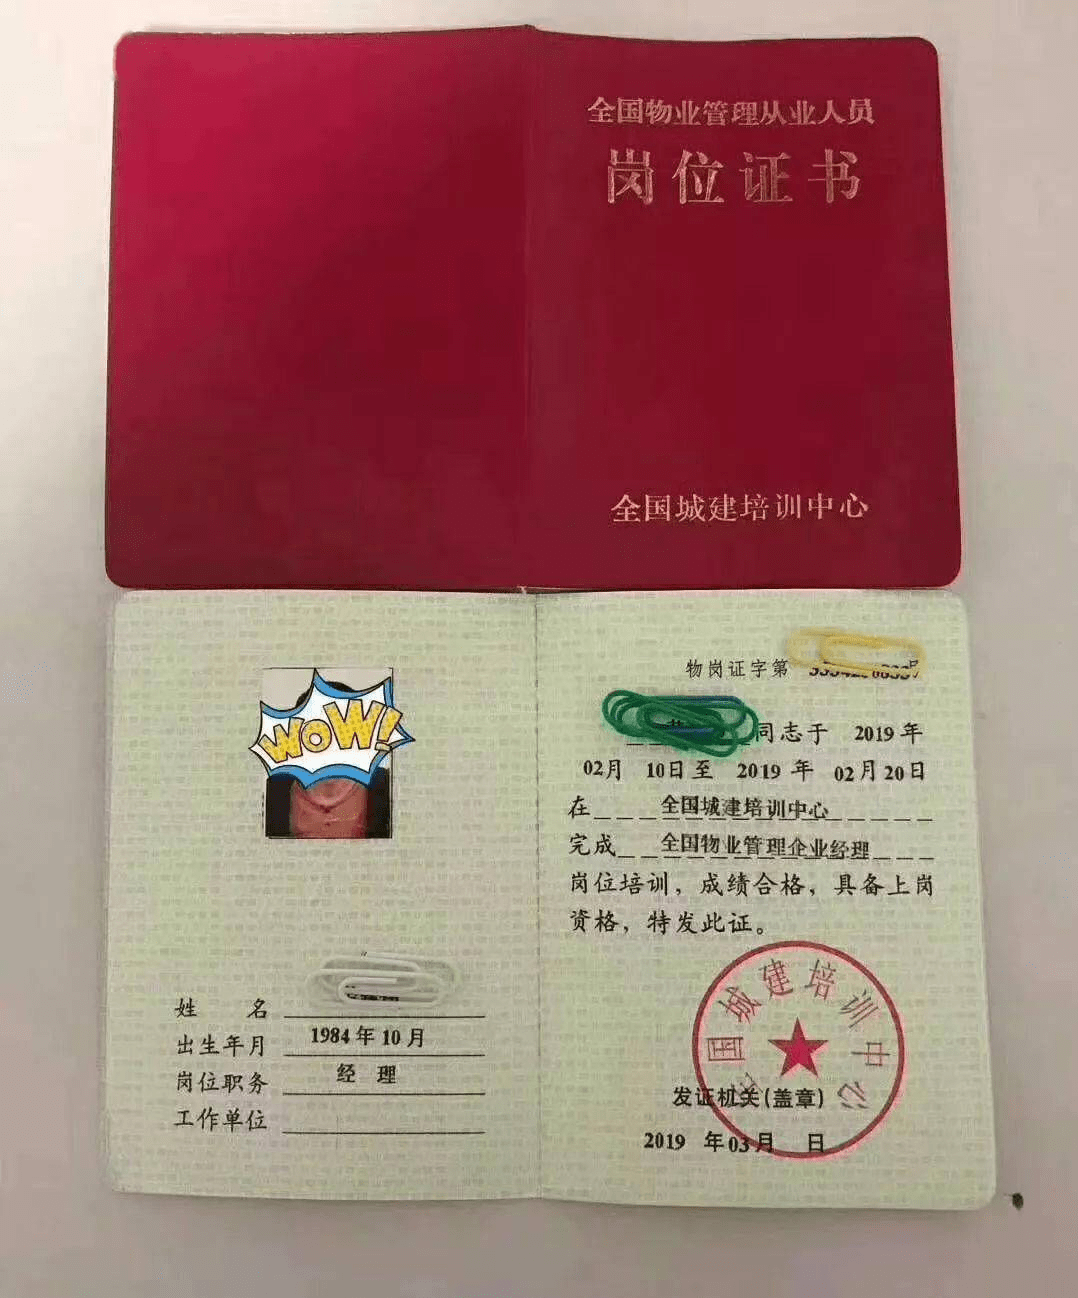 上海市物业管理师注册部门(注册物业管理师证书是否取消)